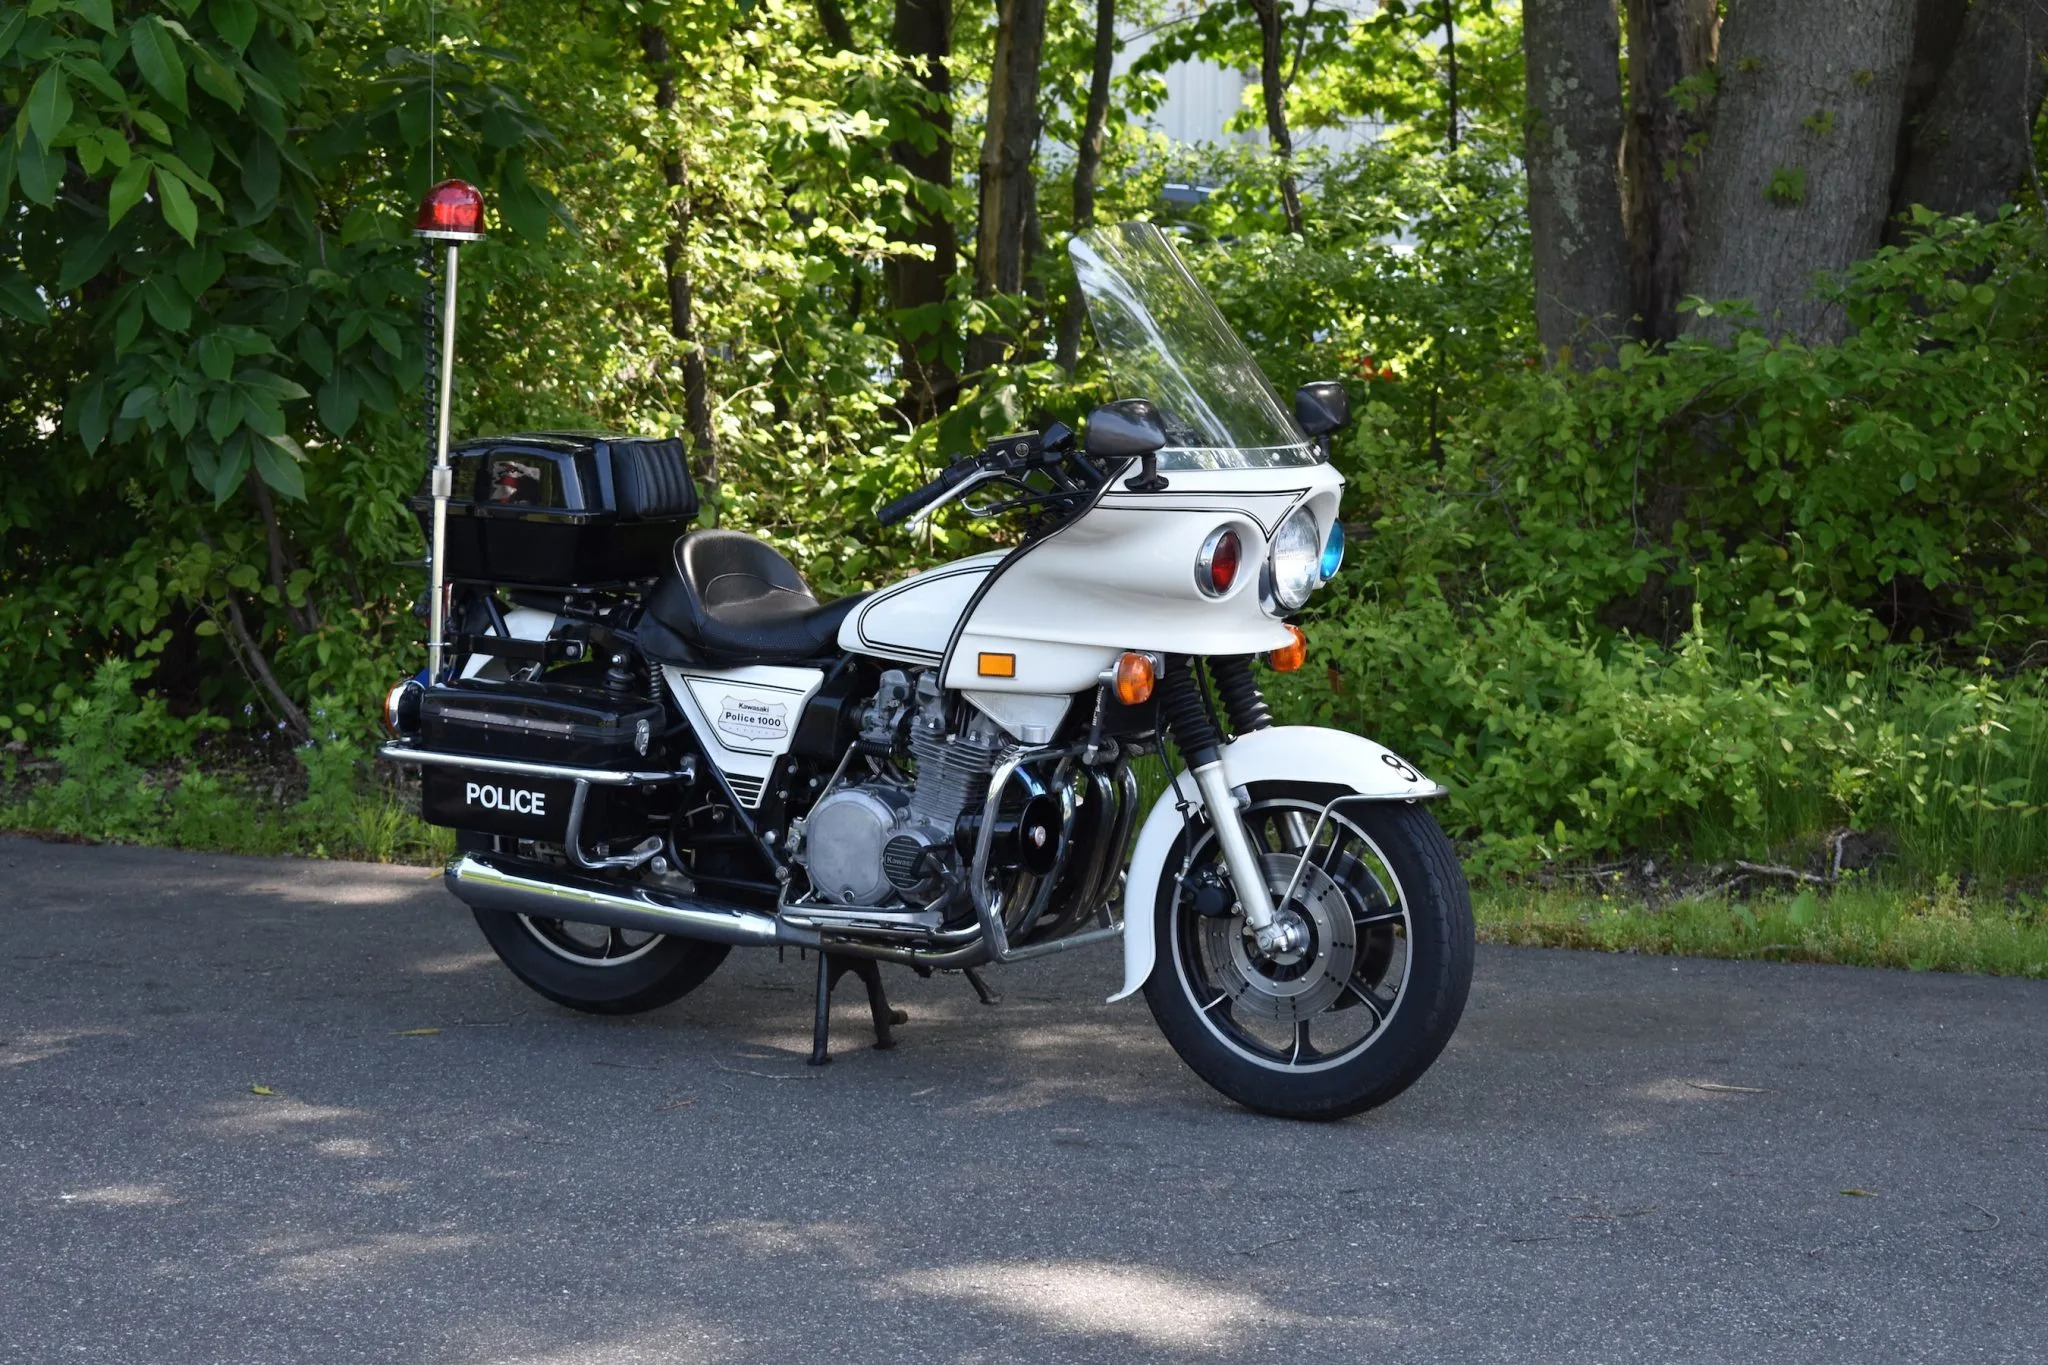 1981 Kawasaki KZ1000 Police